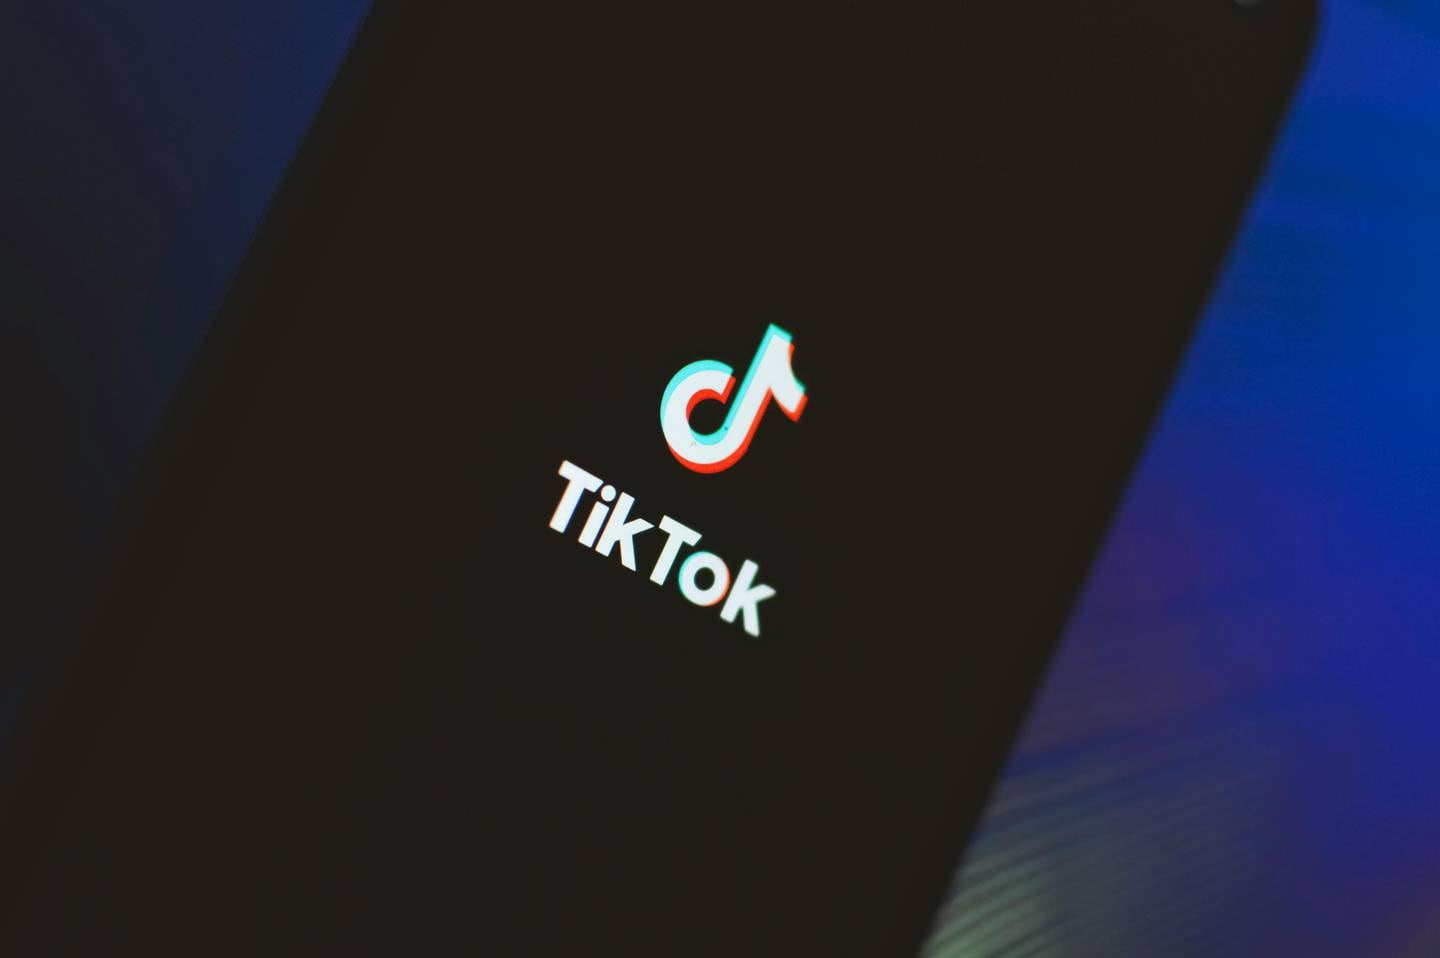 Tiktok ha sido acusado más de una vez de ser usado para espionaje por parte del gobierno chino. Foto de Geri Tech, tomada de Pexels.